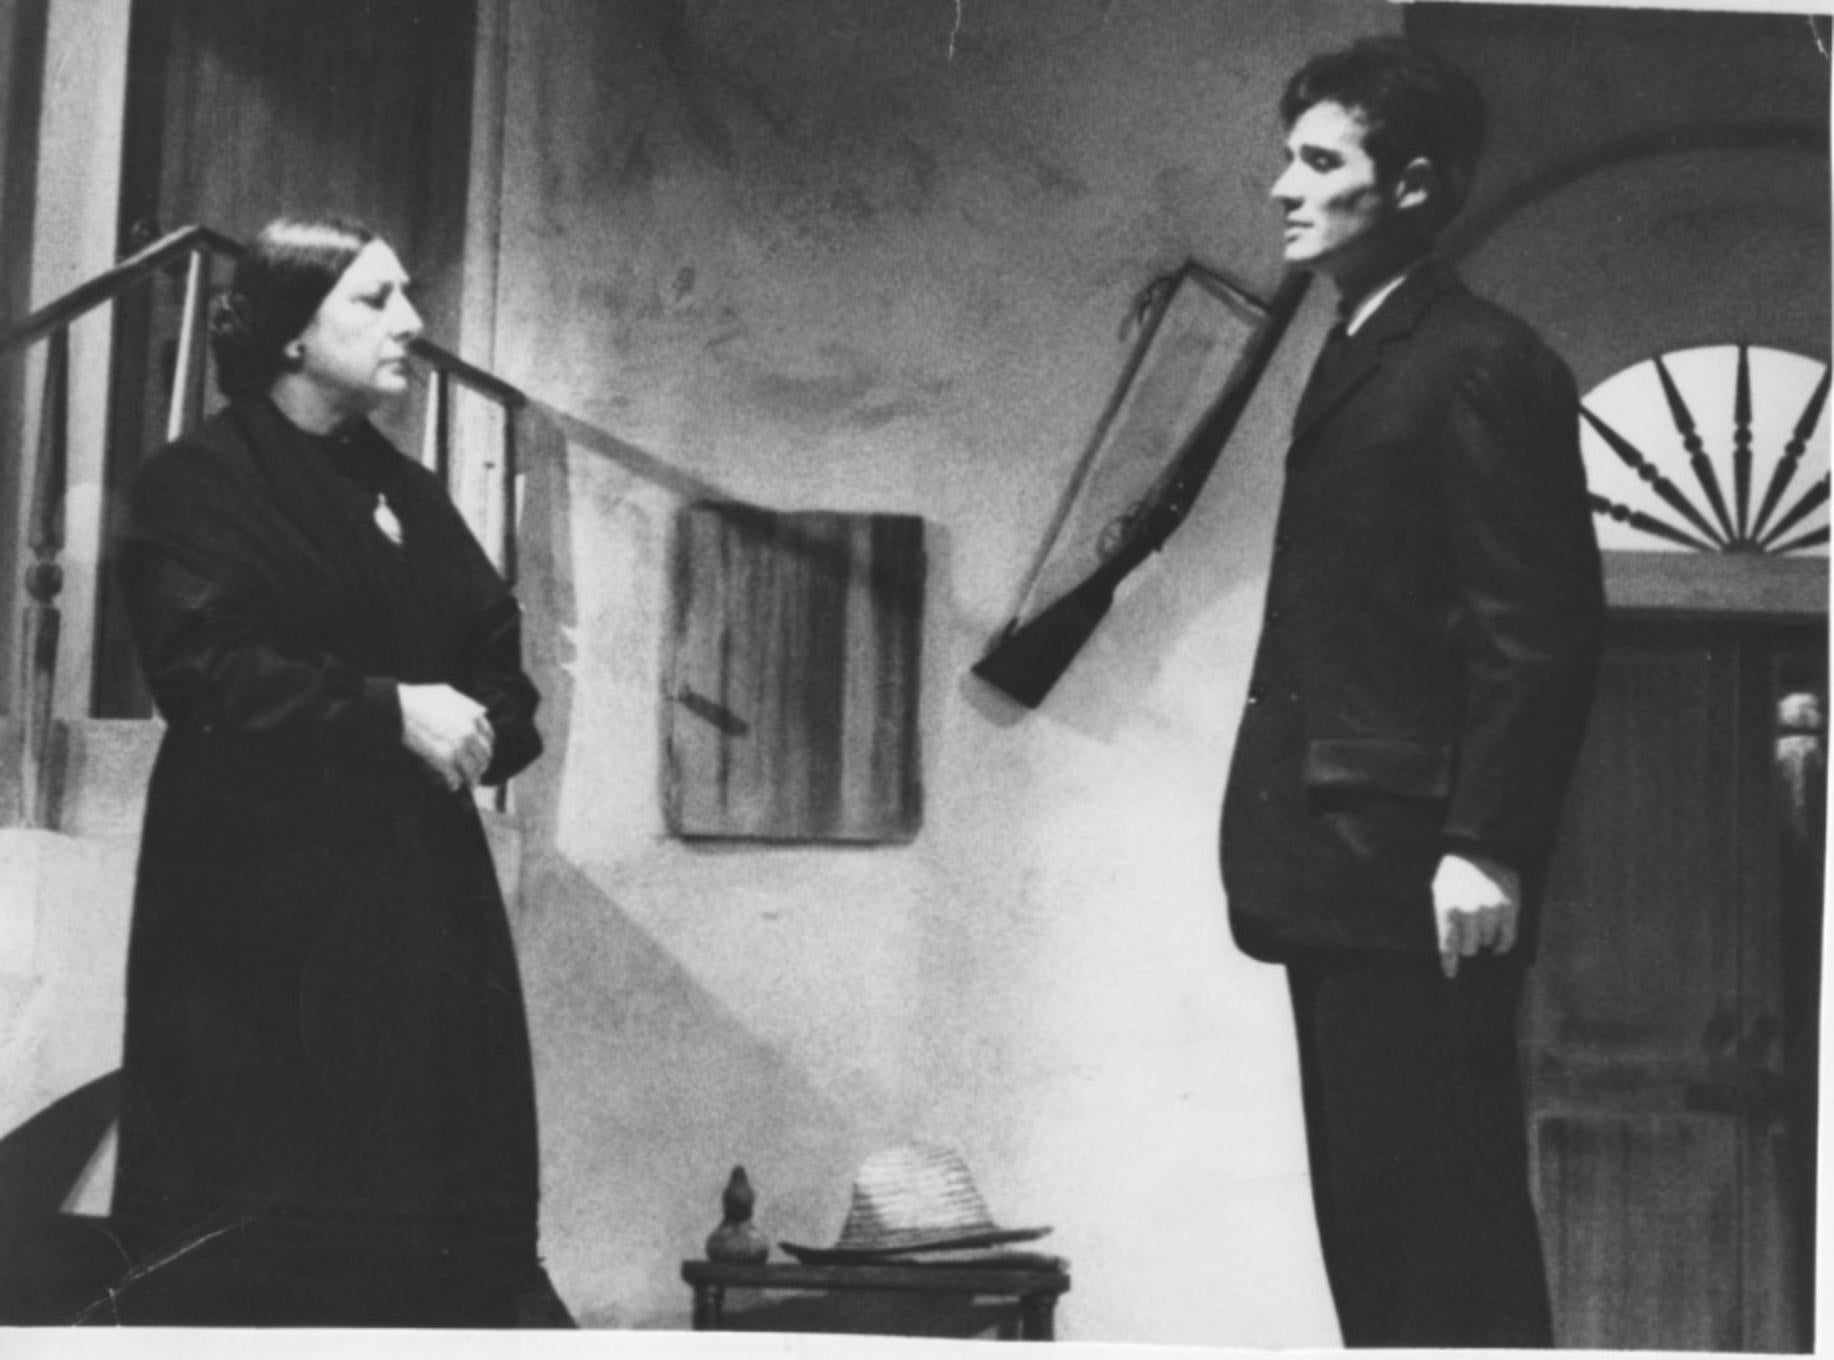 Unknown Figurative Photograph - The Actors Paola Borboni and Alberto Terrani - Vintage Photo - 1960s